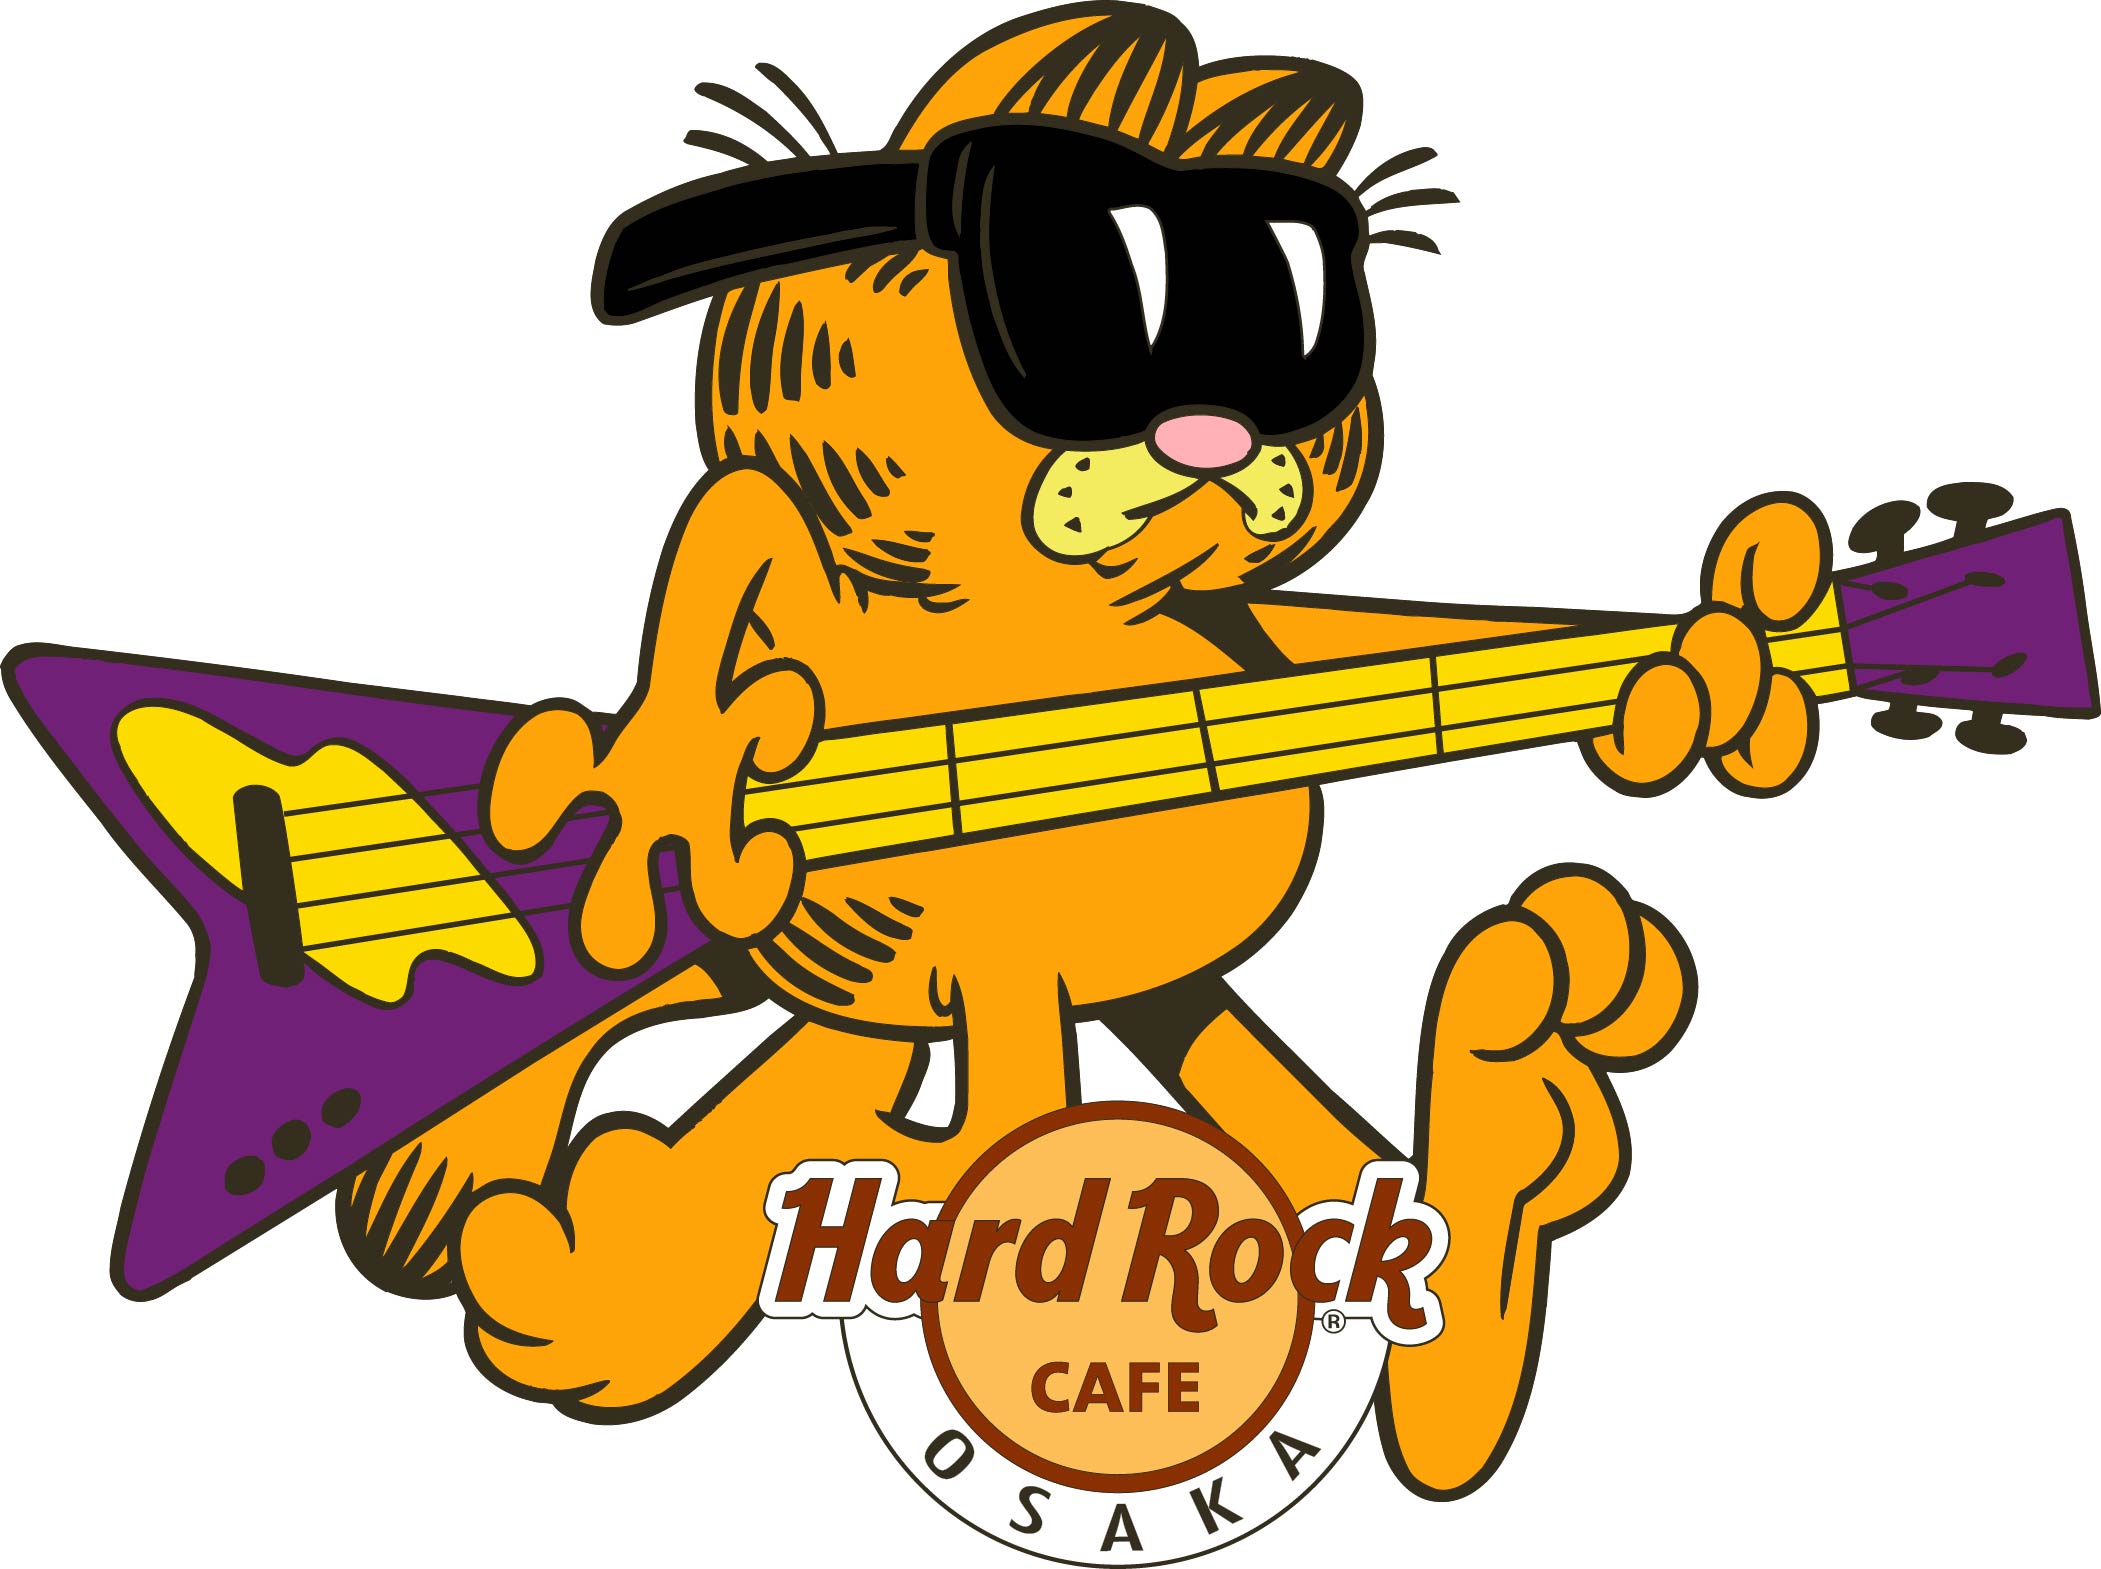 ここでしか手に入らない 数量限定 Garfield ガーフィールド ハードロックカフェ 各店舗でデザインが異なるコラボレーション ピンバッジ発売 株式会社東北新社のプレスリリース